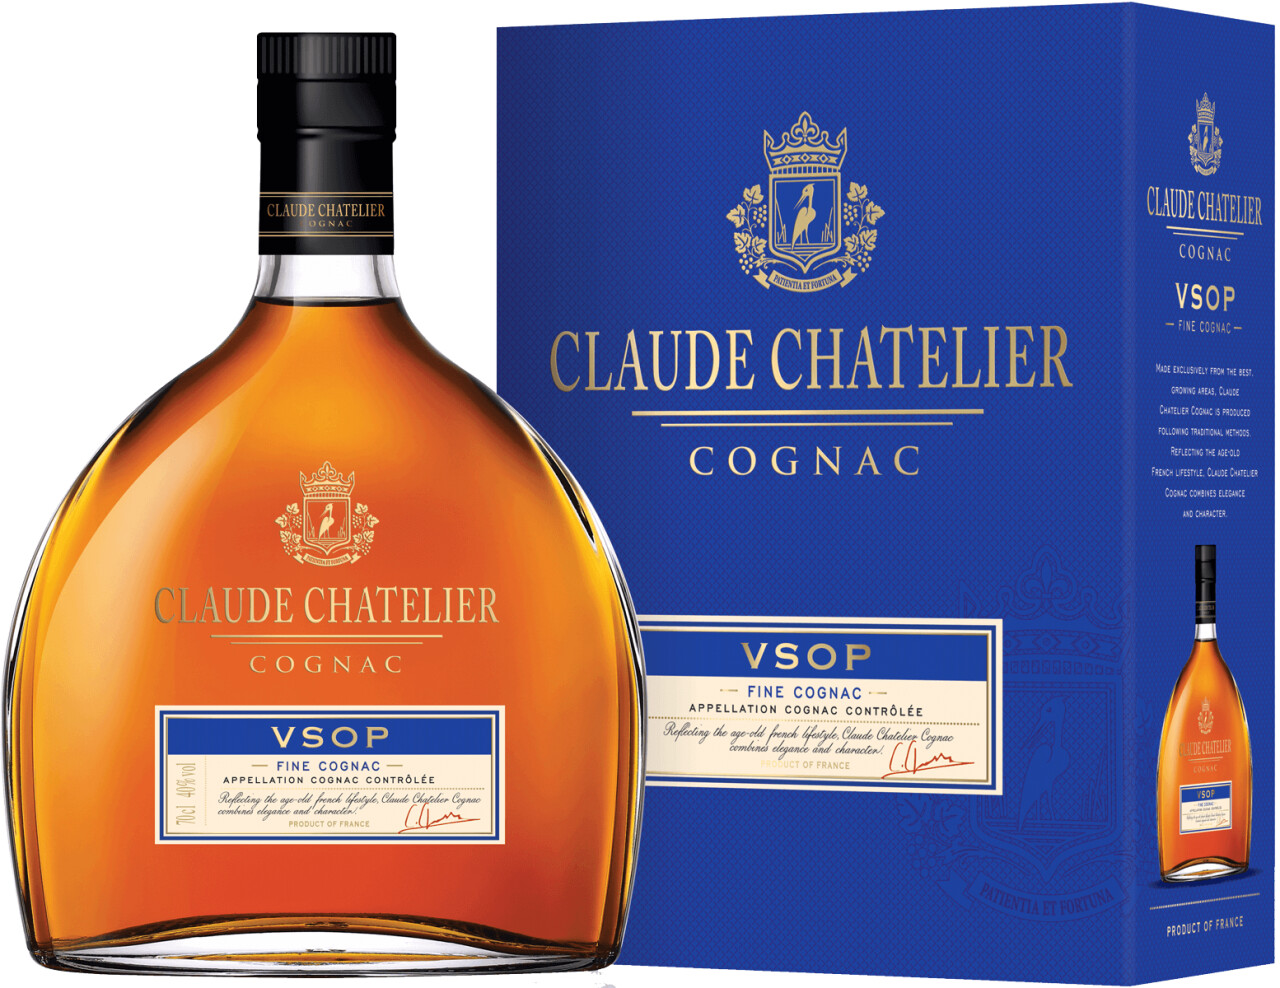 Claude Chatelier VSOP Cognac 37,90 40% | € Preisvergleich 0,7l ab bei